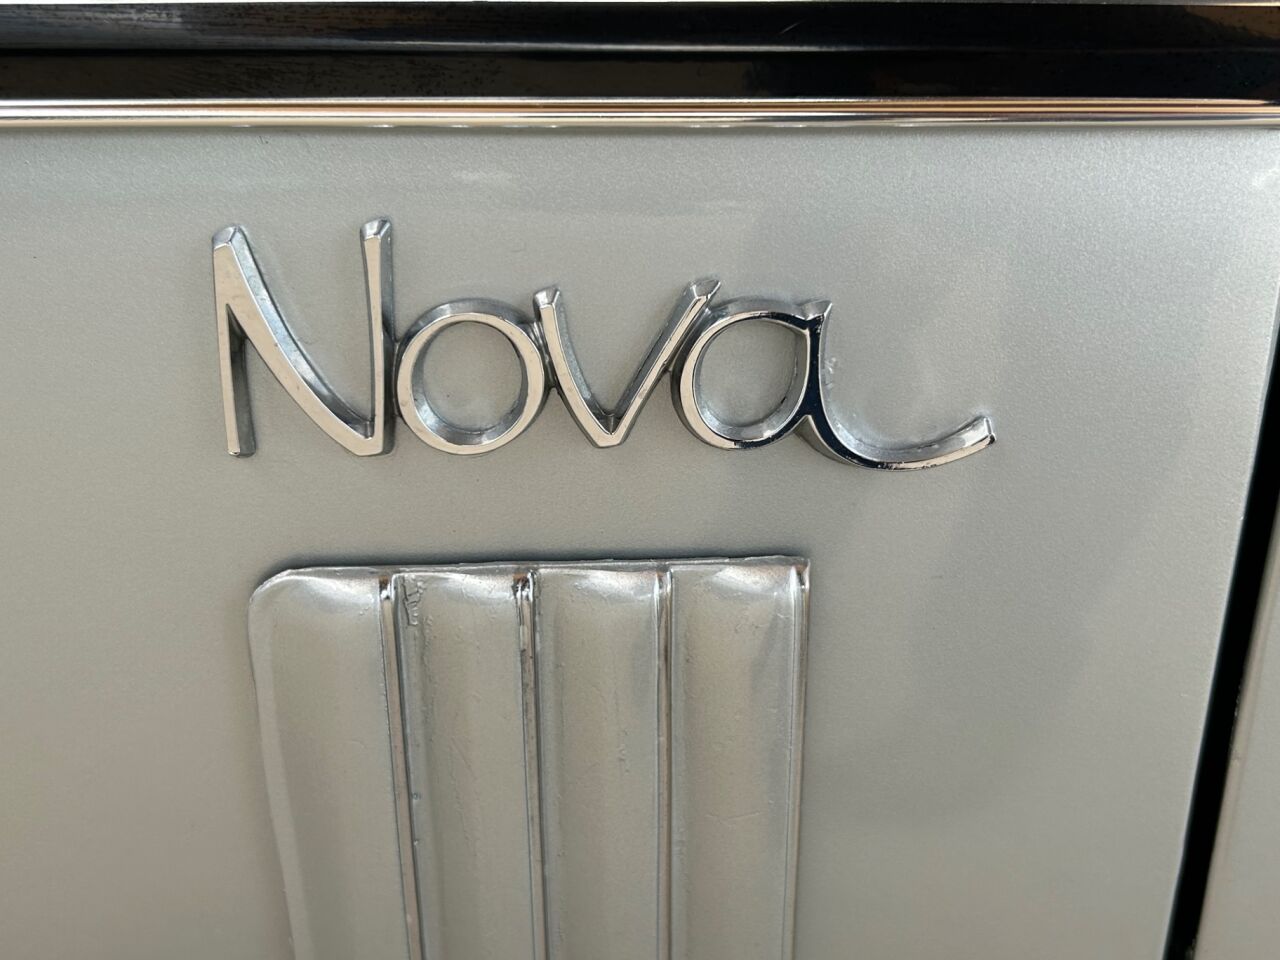 1970 Chevrolet Nova 14